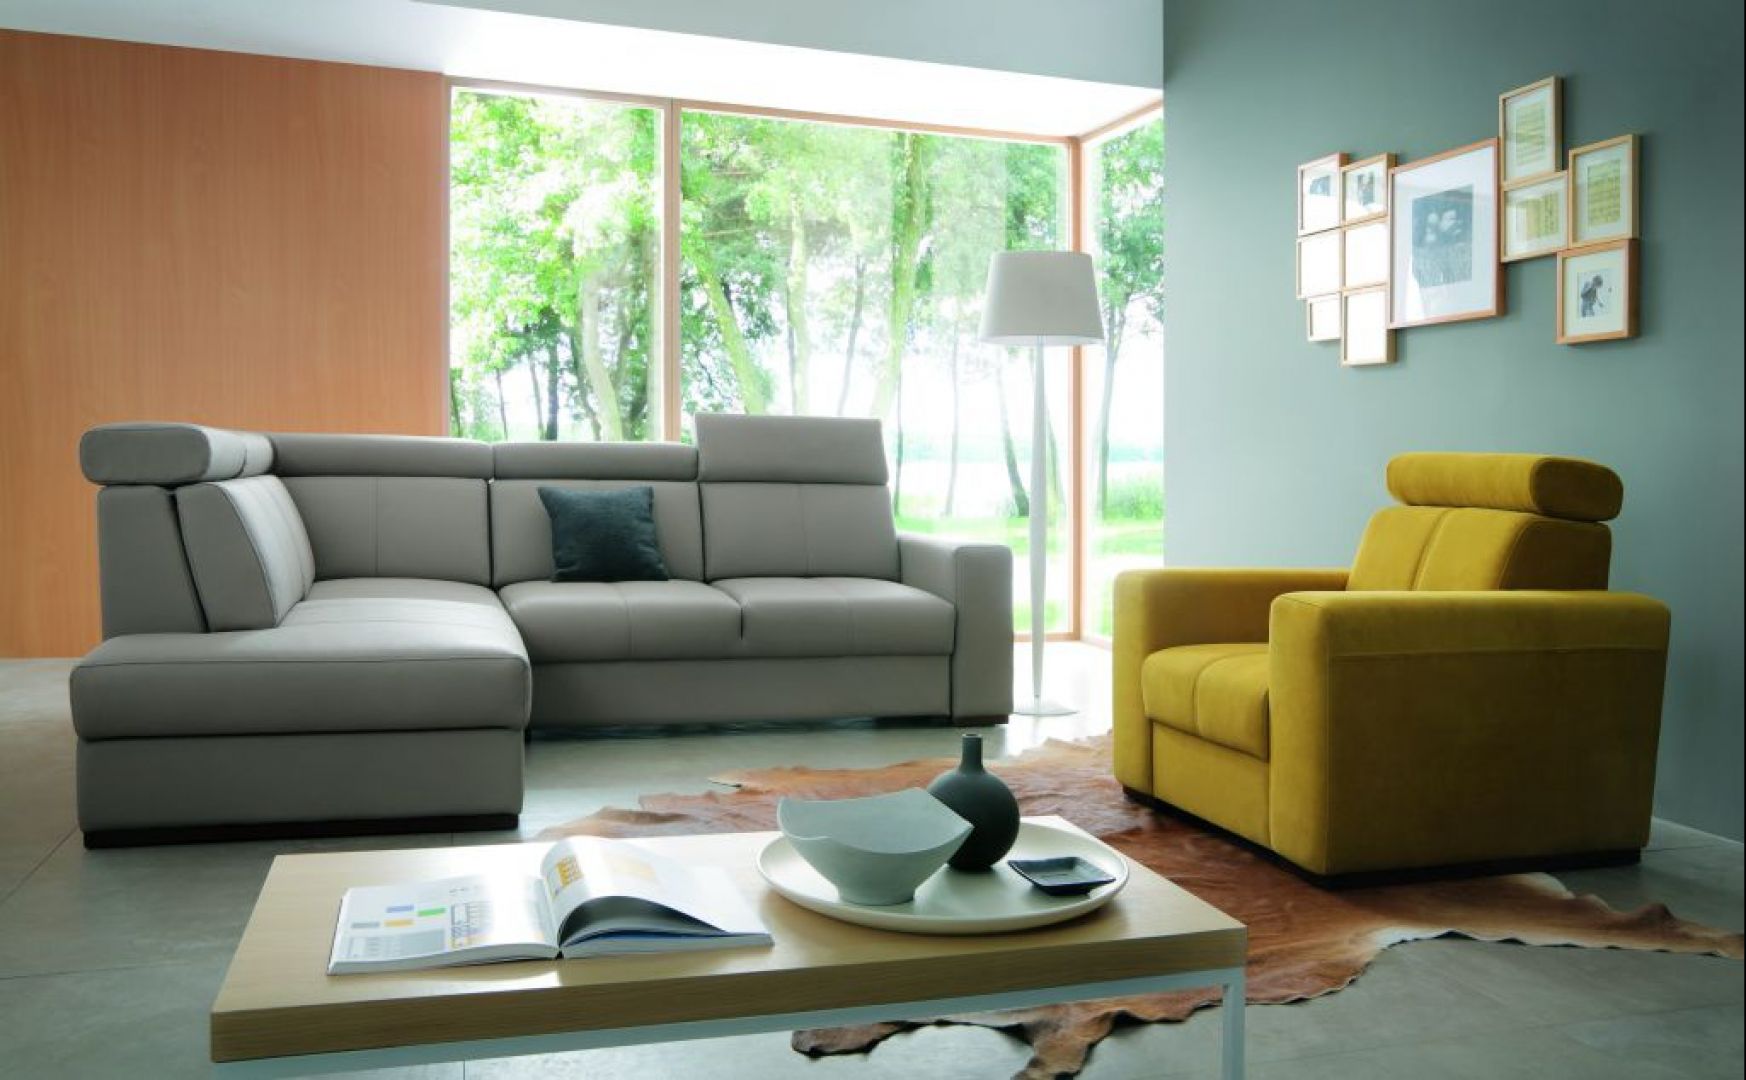 Dzięki łączeniu innej kolorystyki fotela i narożnika z tej samej kolekcji można stworzyć ciekawy design w domu. Fot. Wajnert Meble